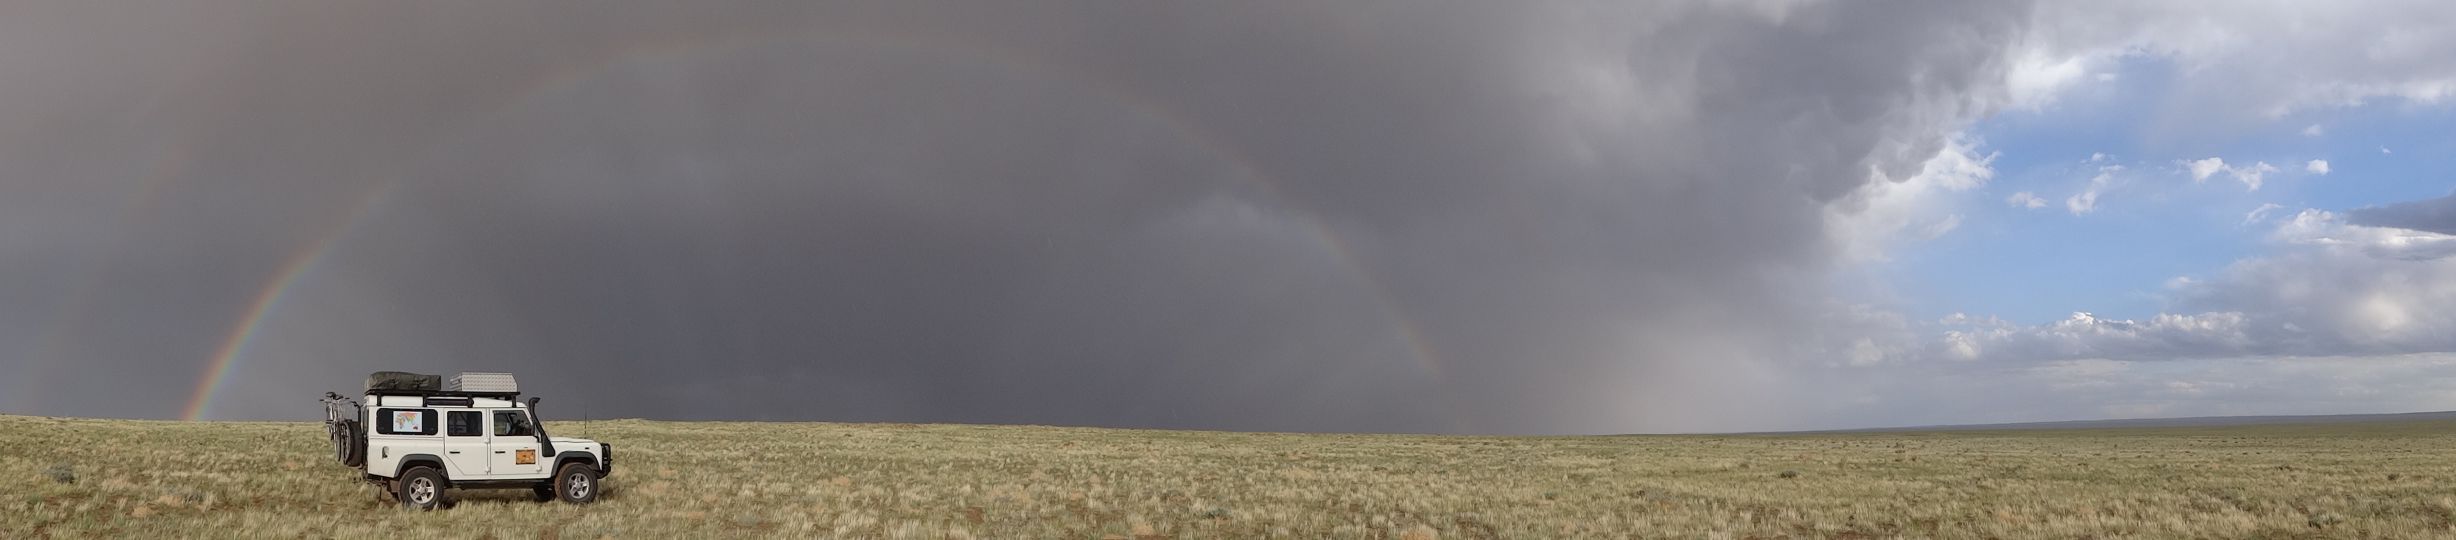 Lara and rainbow in the Gobi Desert